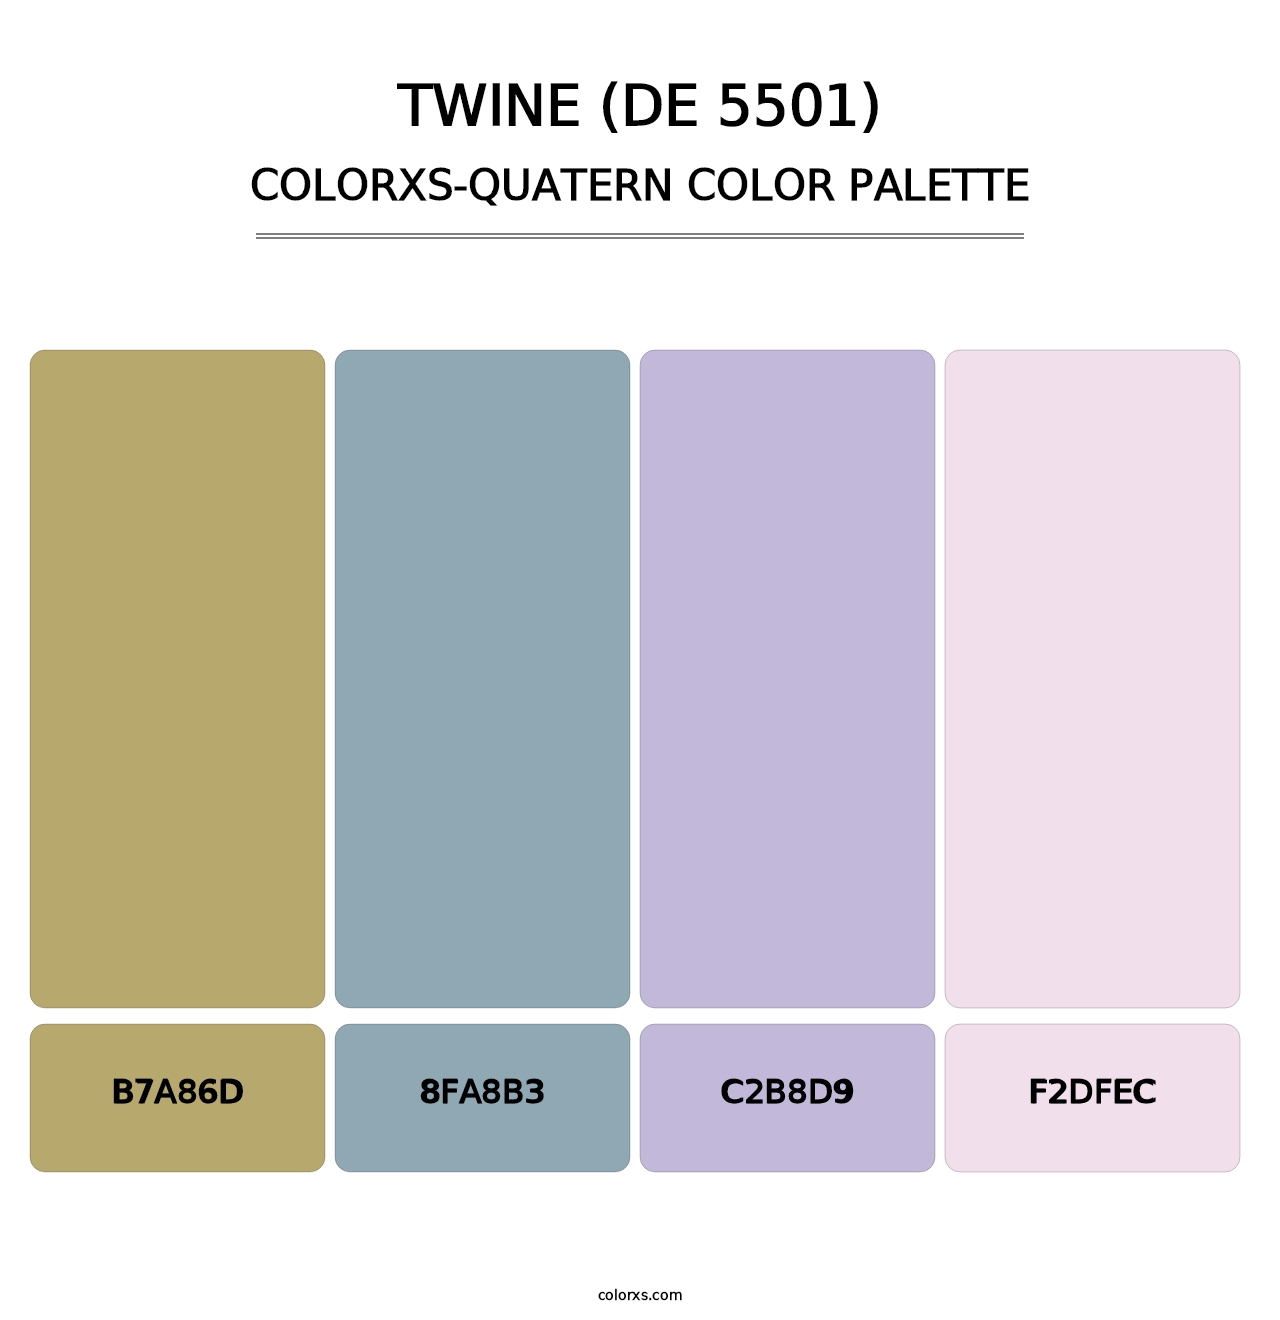 Twine (DE 5501) - Colorxs Quatern Palette